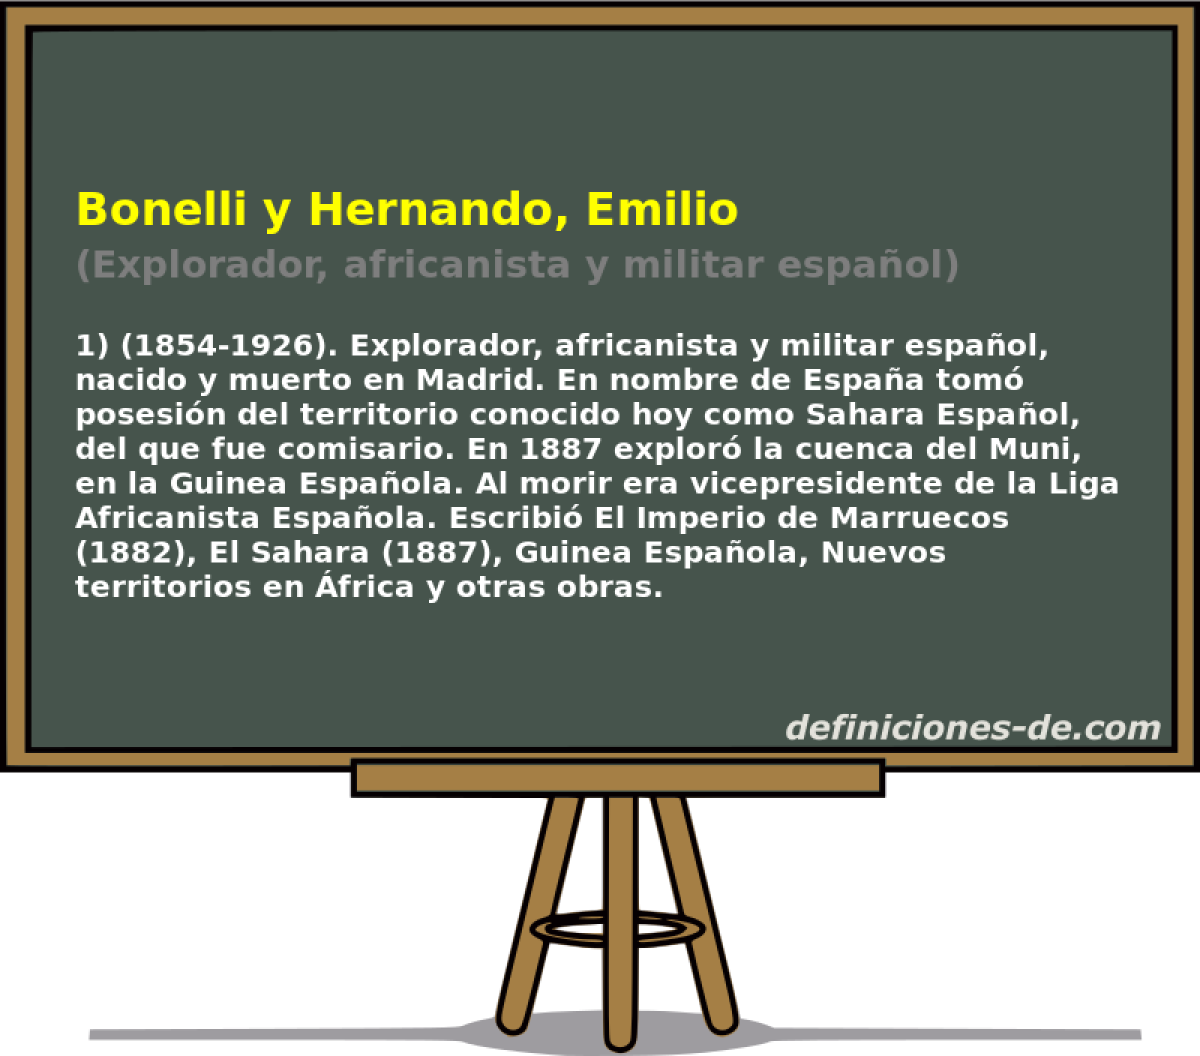 Bonelli y Hernando, Emilio (Explorador, africanista y militar espaol)